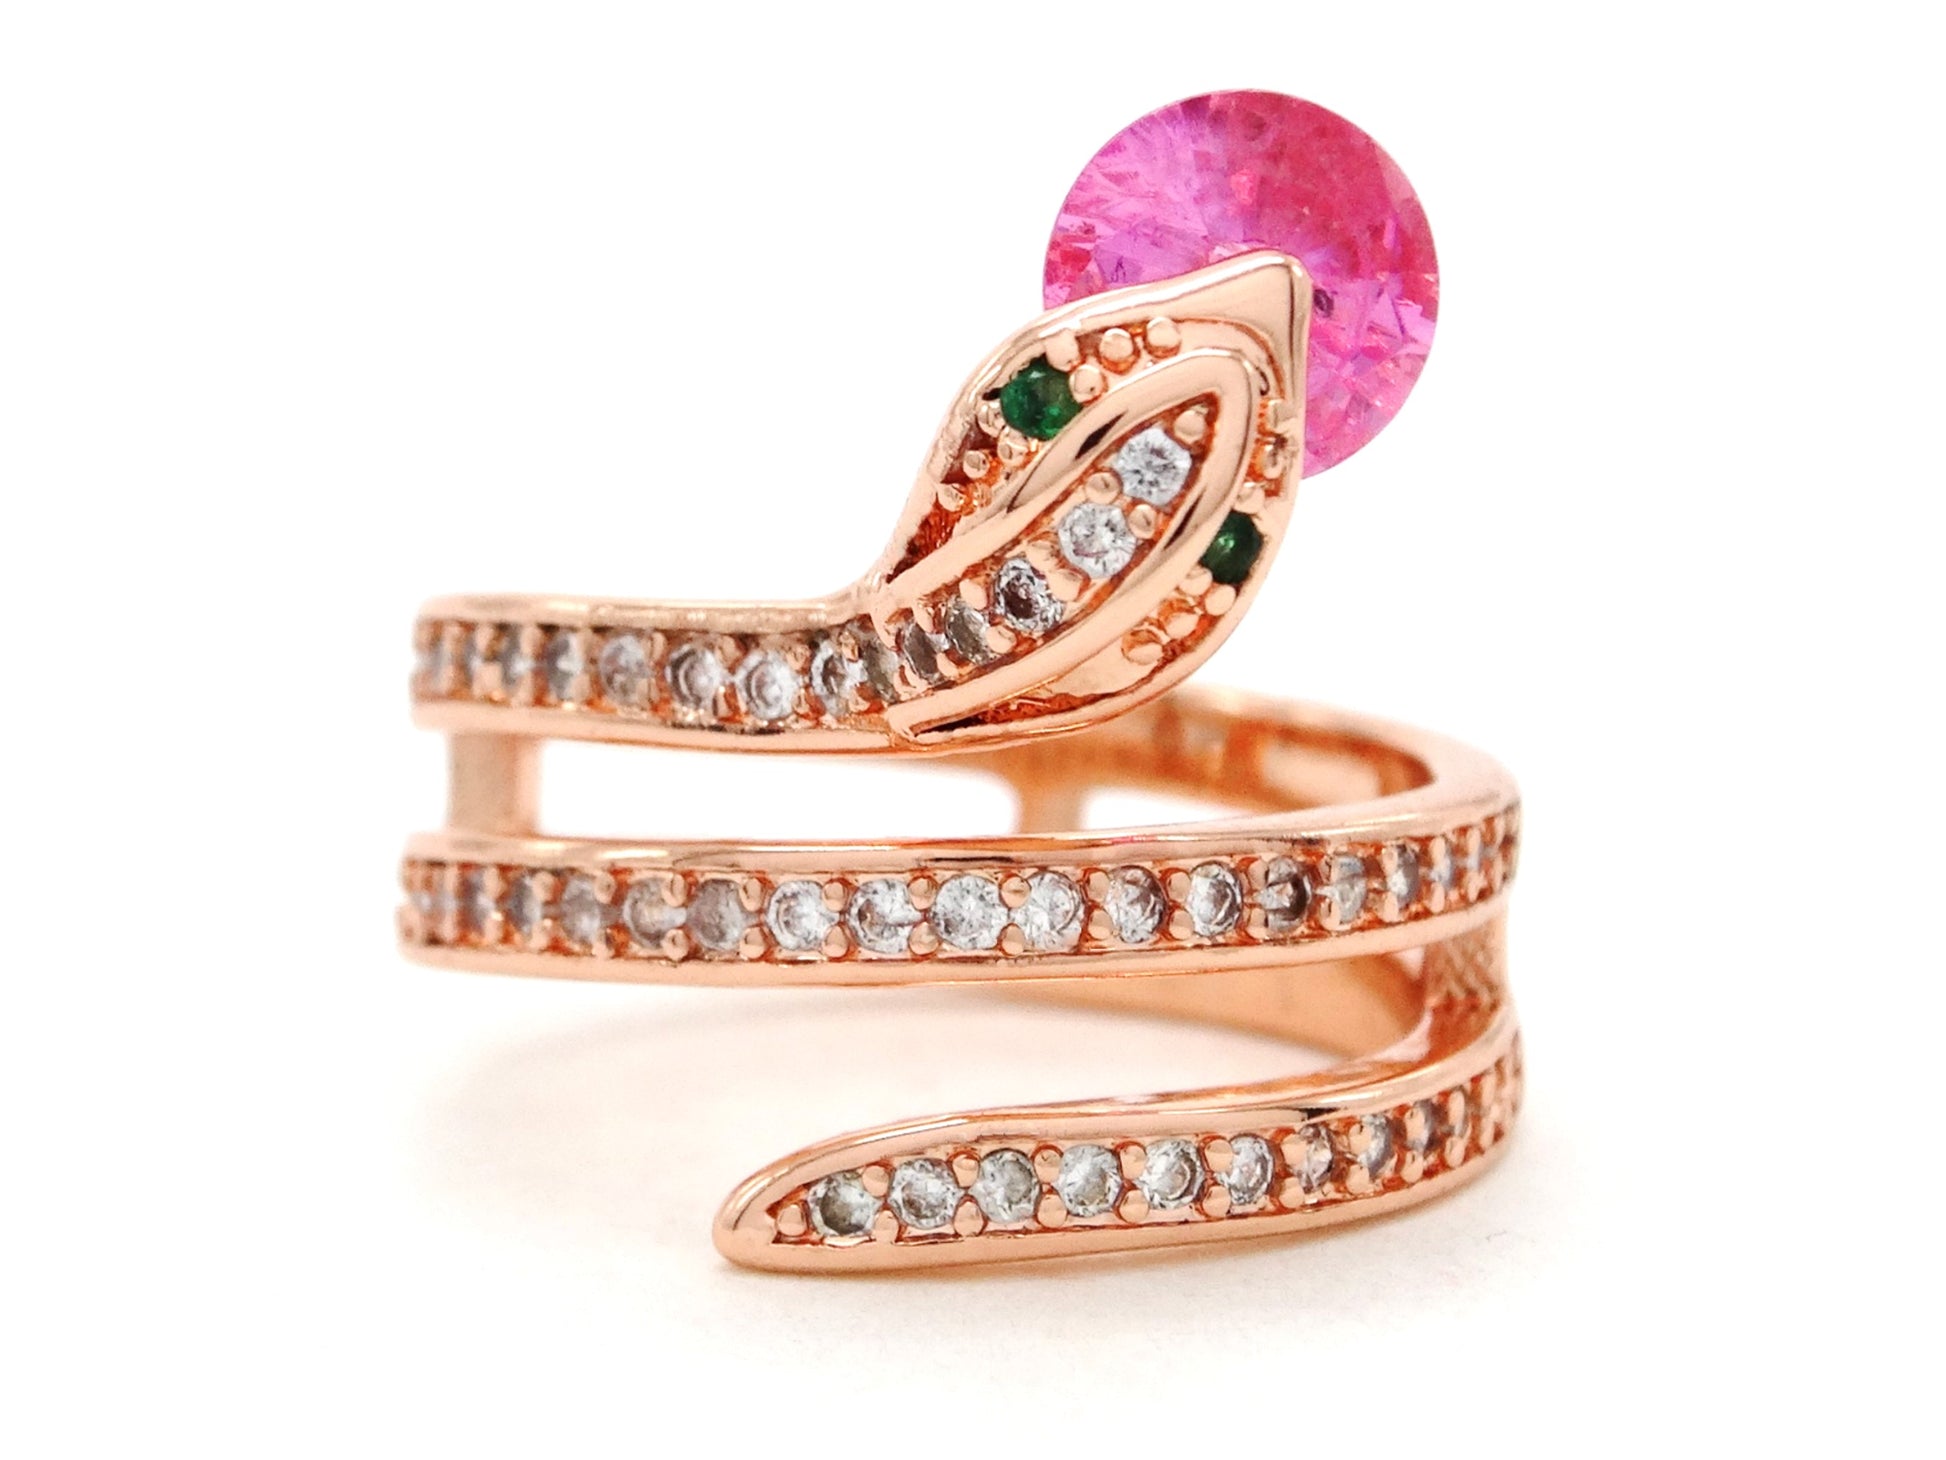 Rose gold snake ring with pink gemstone MAIN